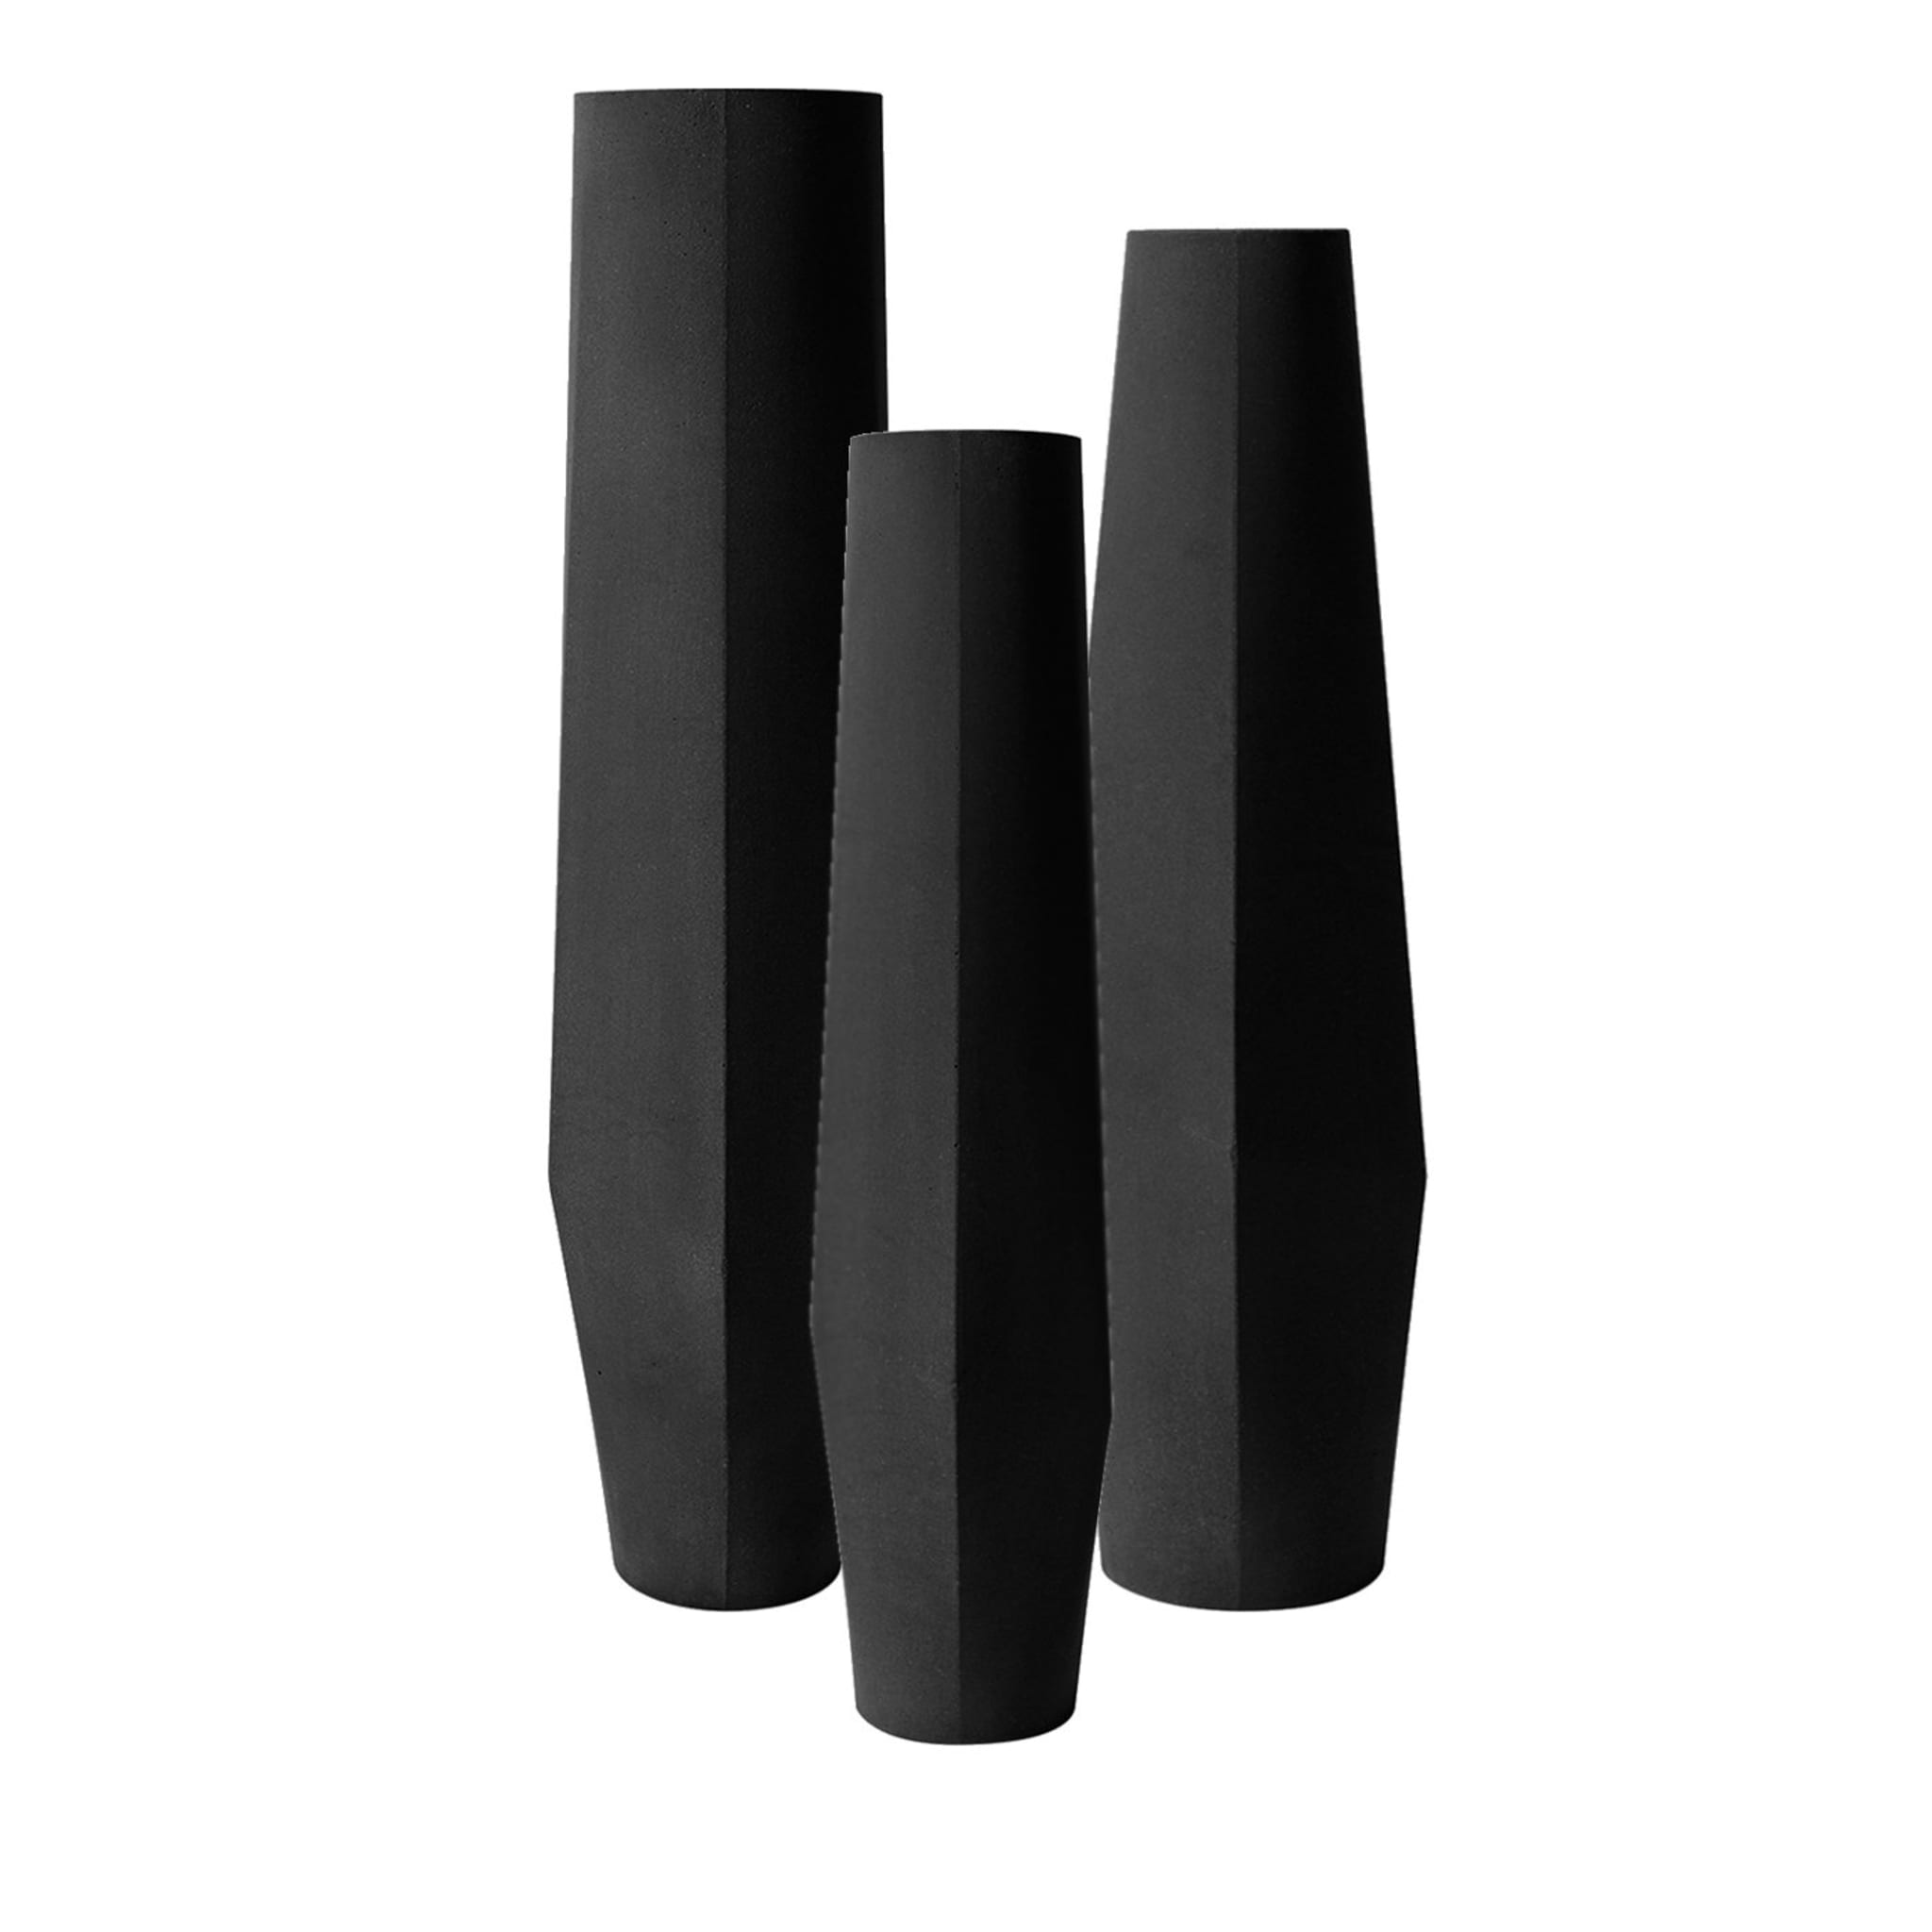 Marchigüe Black Vase Set of 3  - Main view